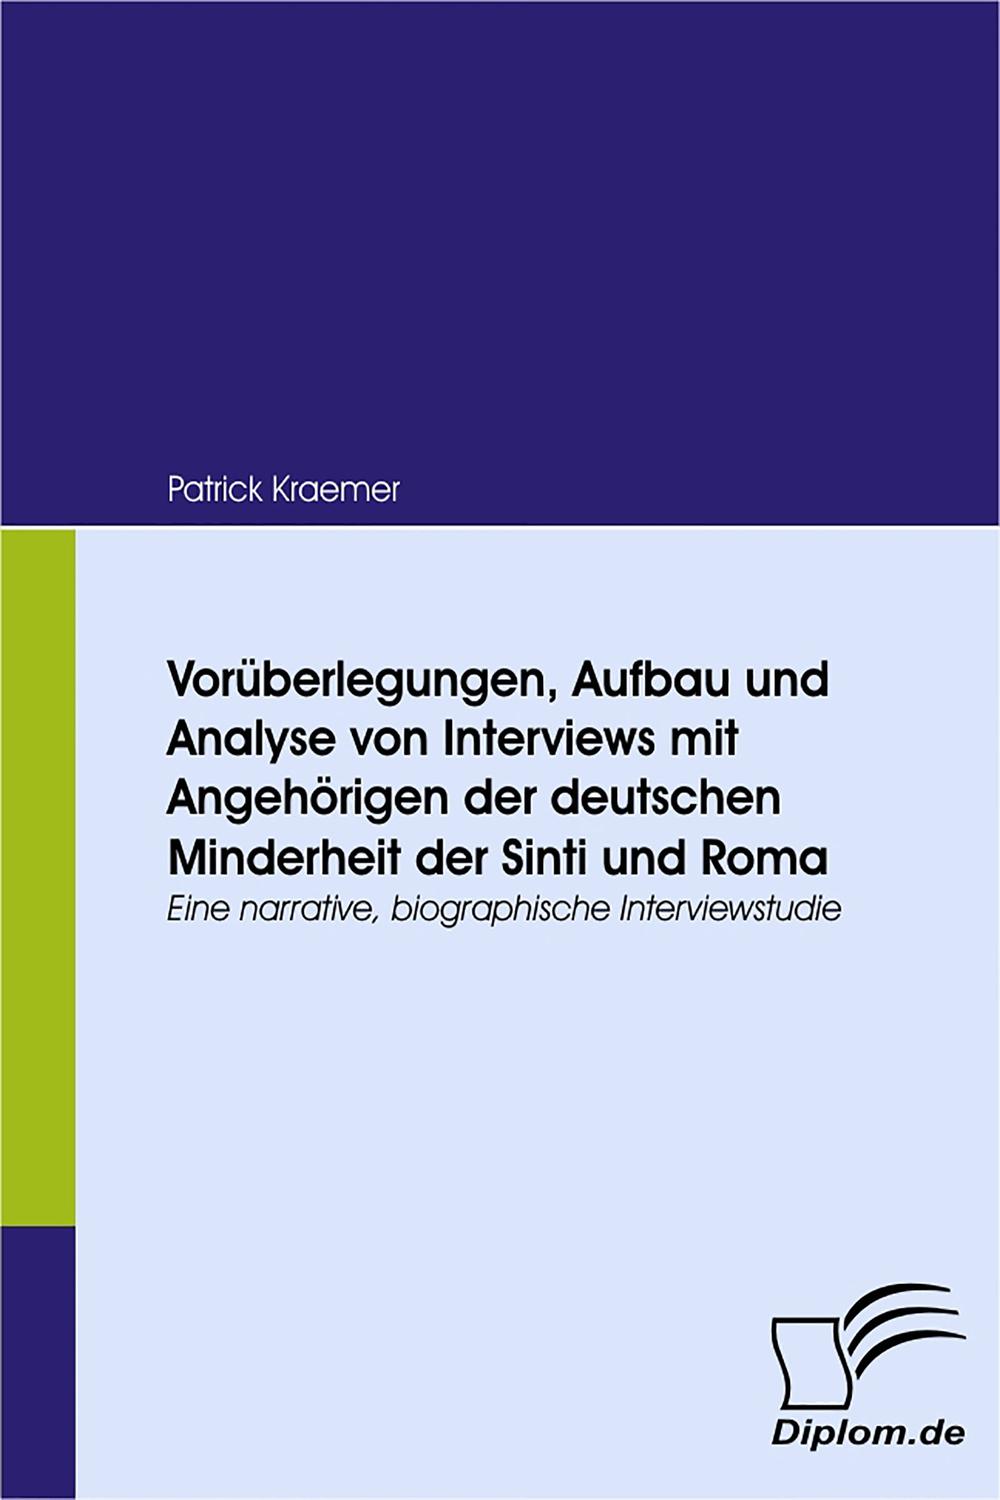 Vorüberlegungen, Aufbau und Analyse von Interviews mit Angehörigen der deutschen Minderheit der Sinti und Roma - Patrick Kraemer